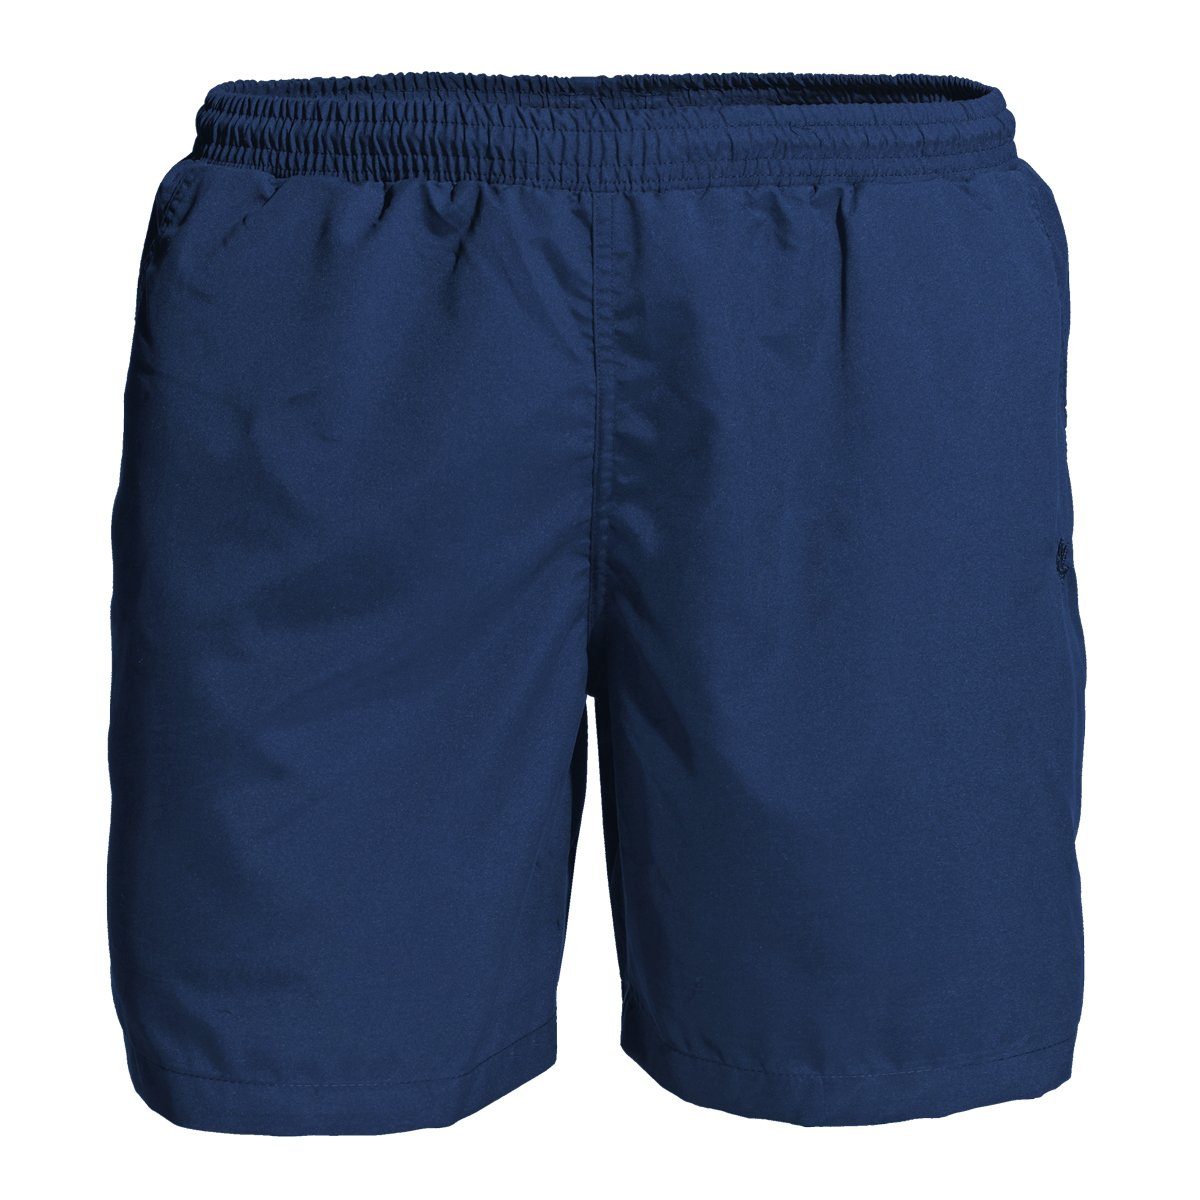 AHORN SPORTSWEAR Badeshorts Große Größen Fitness-/Badeshorts blau Ahorn Sportswear